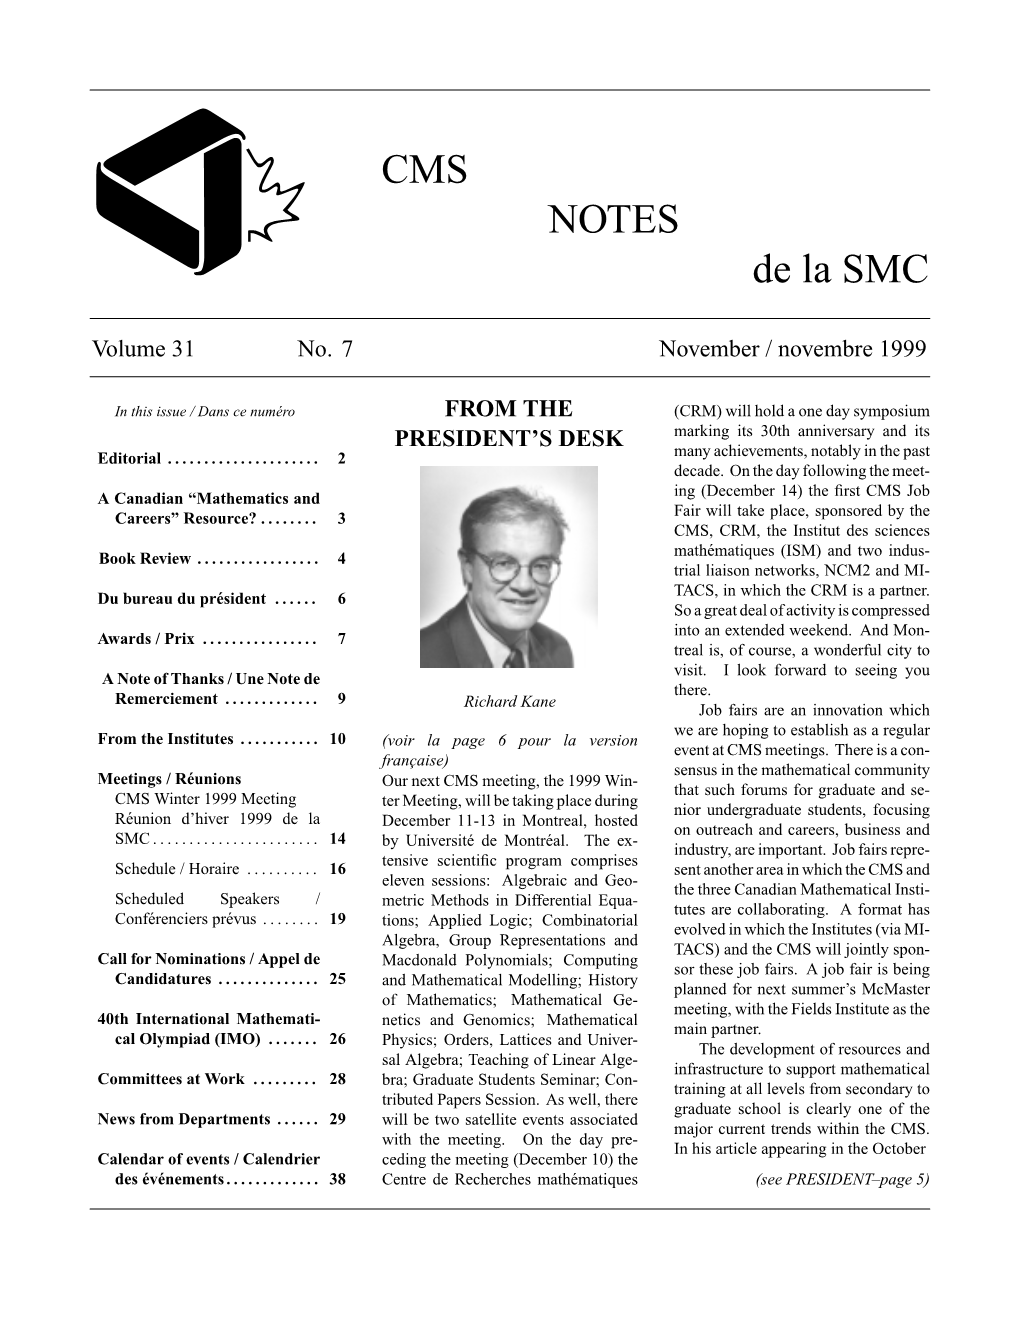 CMS NOTES De La SMC